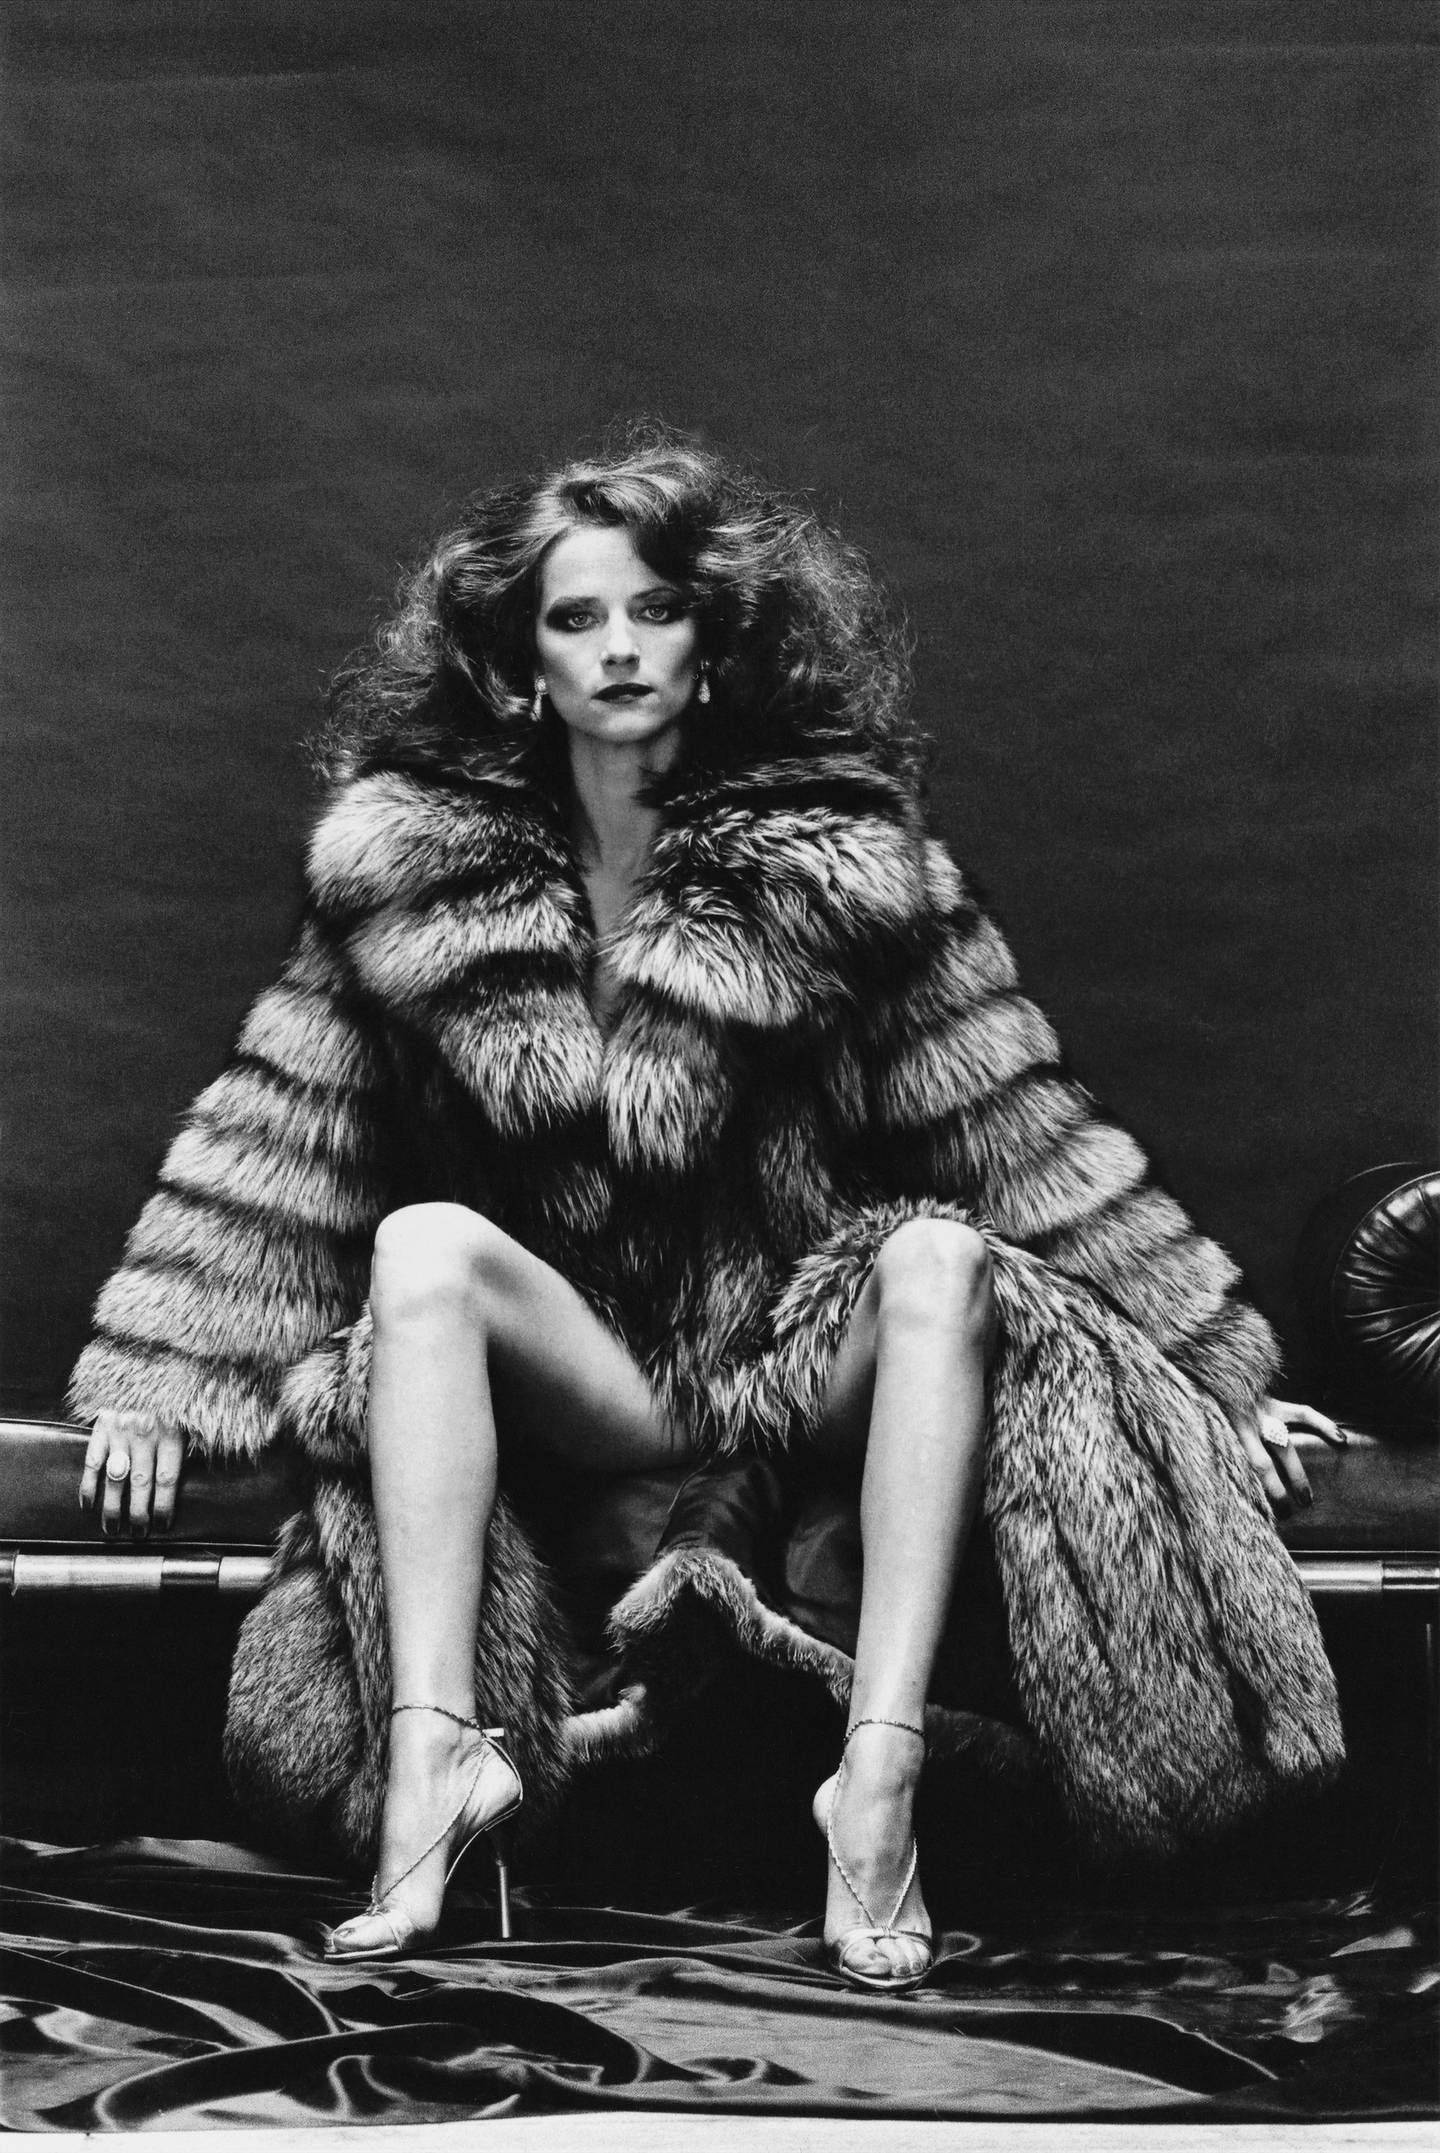 Helmut Newton, Charlotte Rampling as Venus in Furs, Paris, 1977.